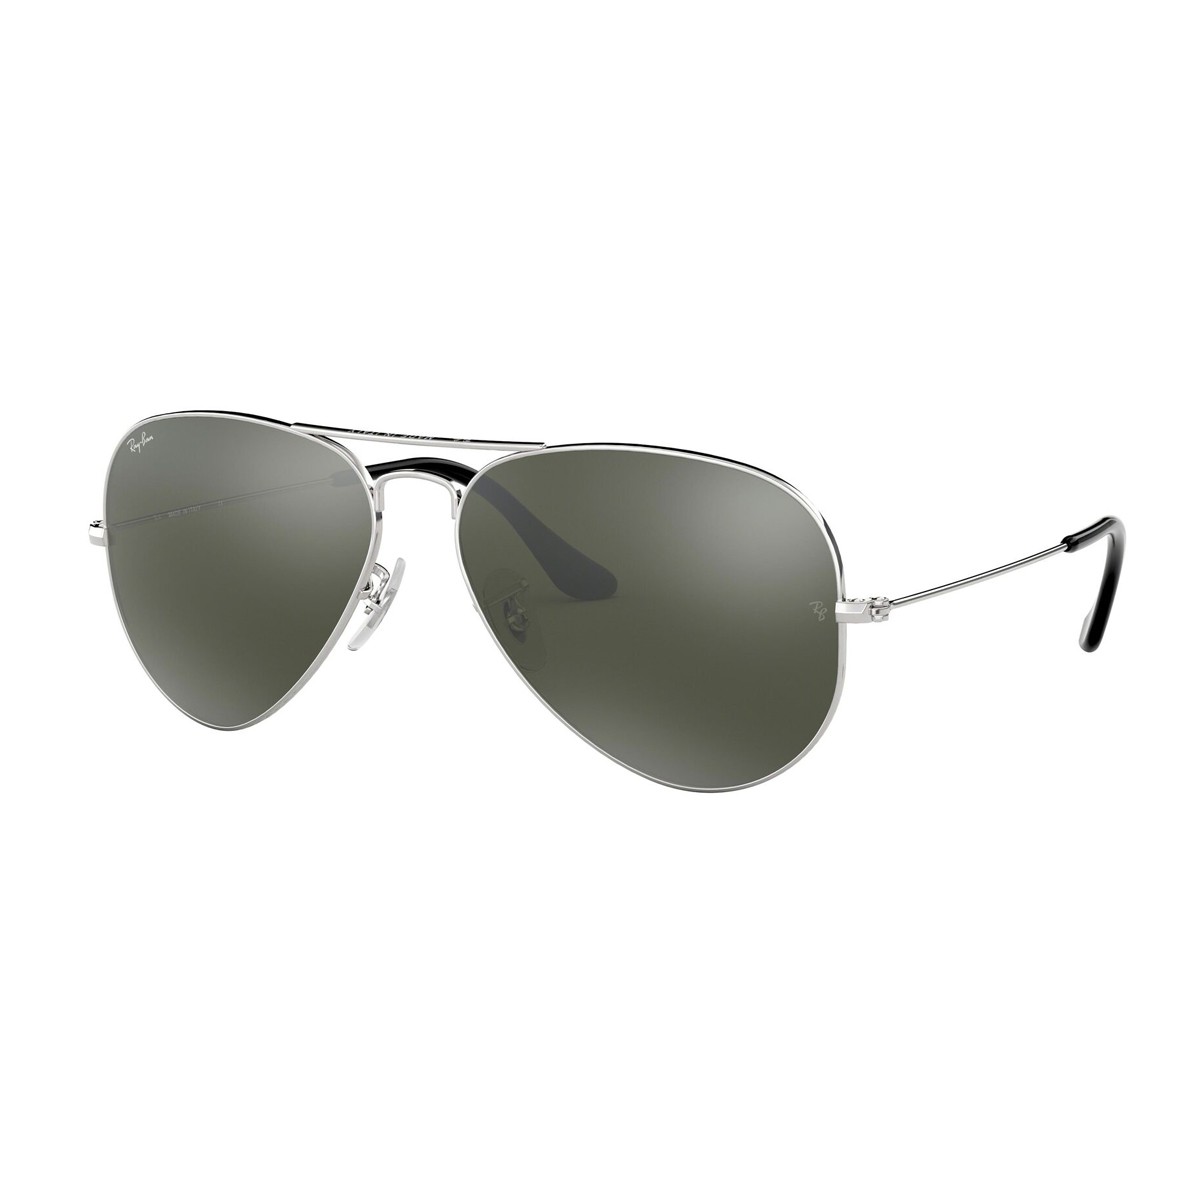 Ray-Ban Aviator 3025 | Unisex sunglasses